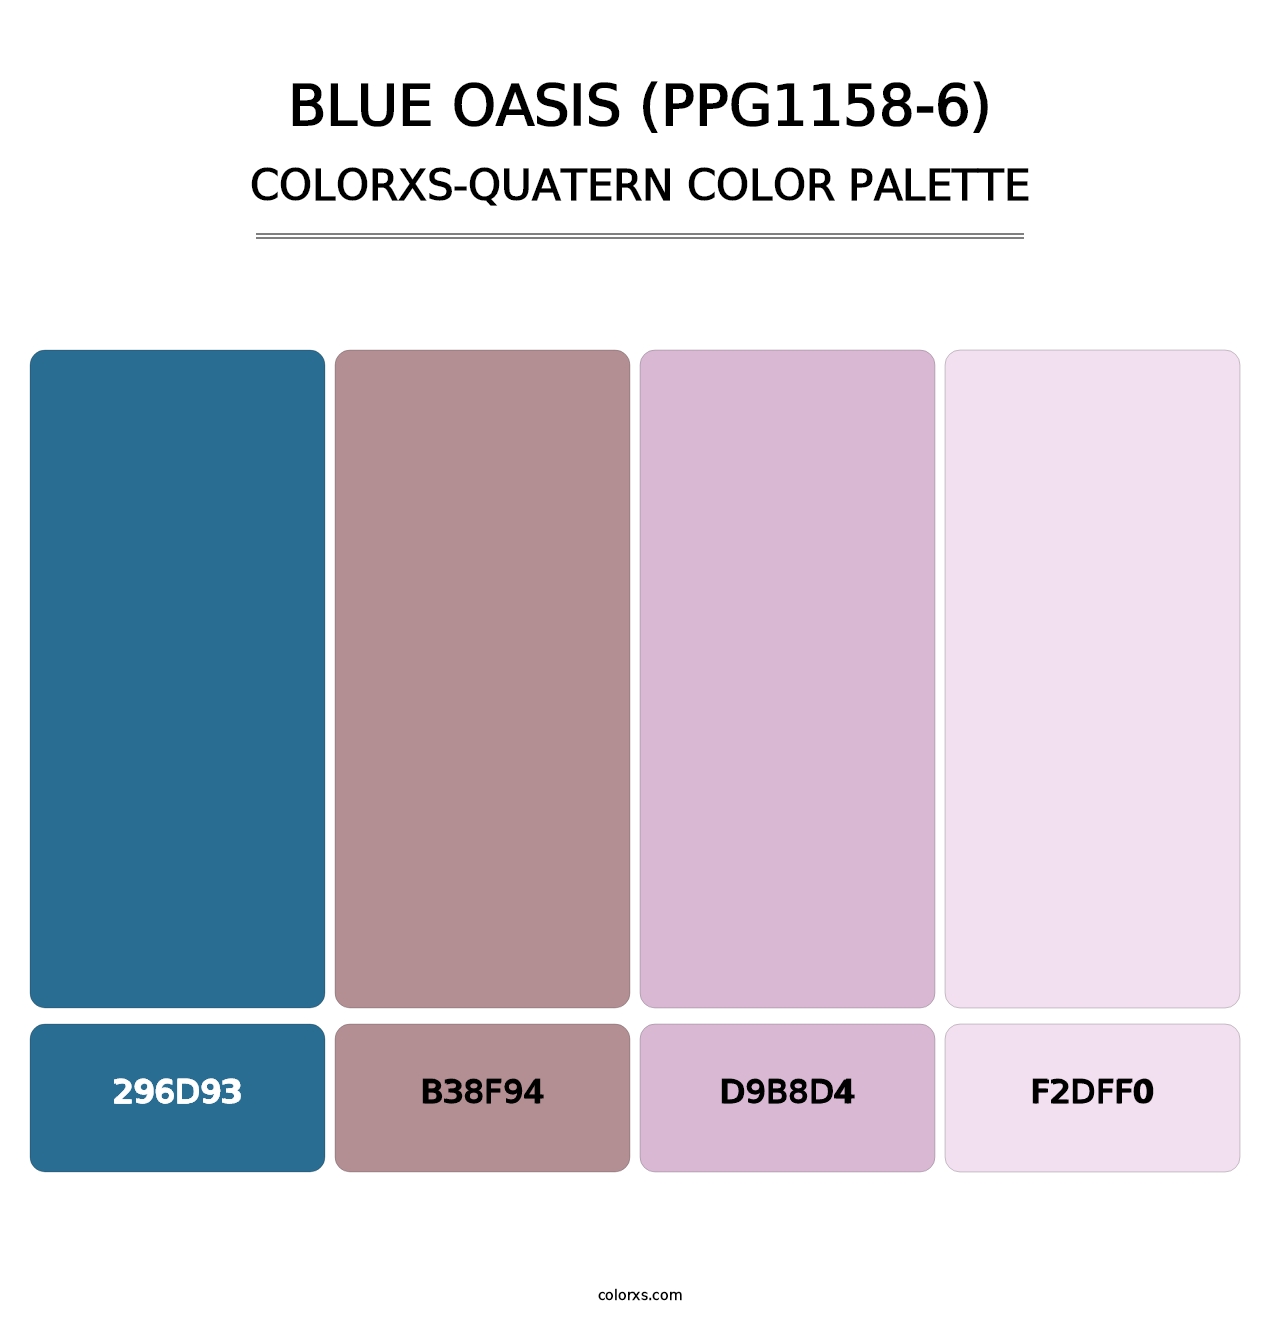 Blue Oasis (PPG1158-6) - Colorxs Quatern Palette